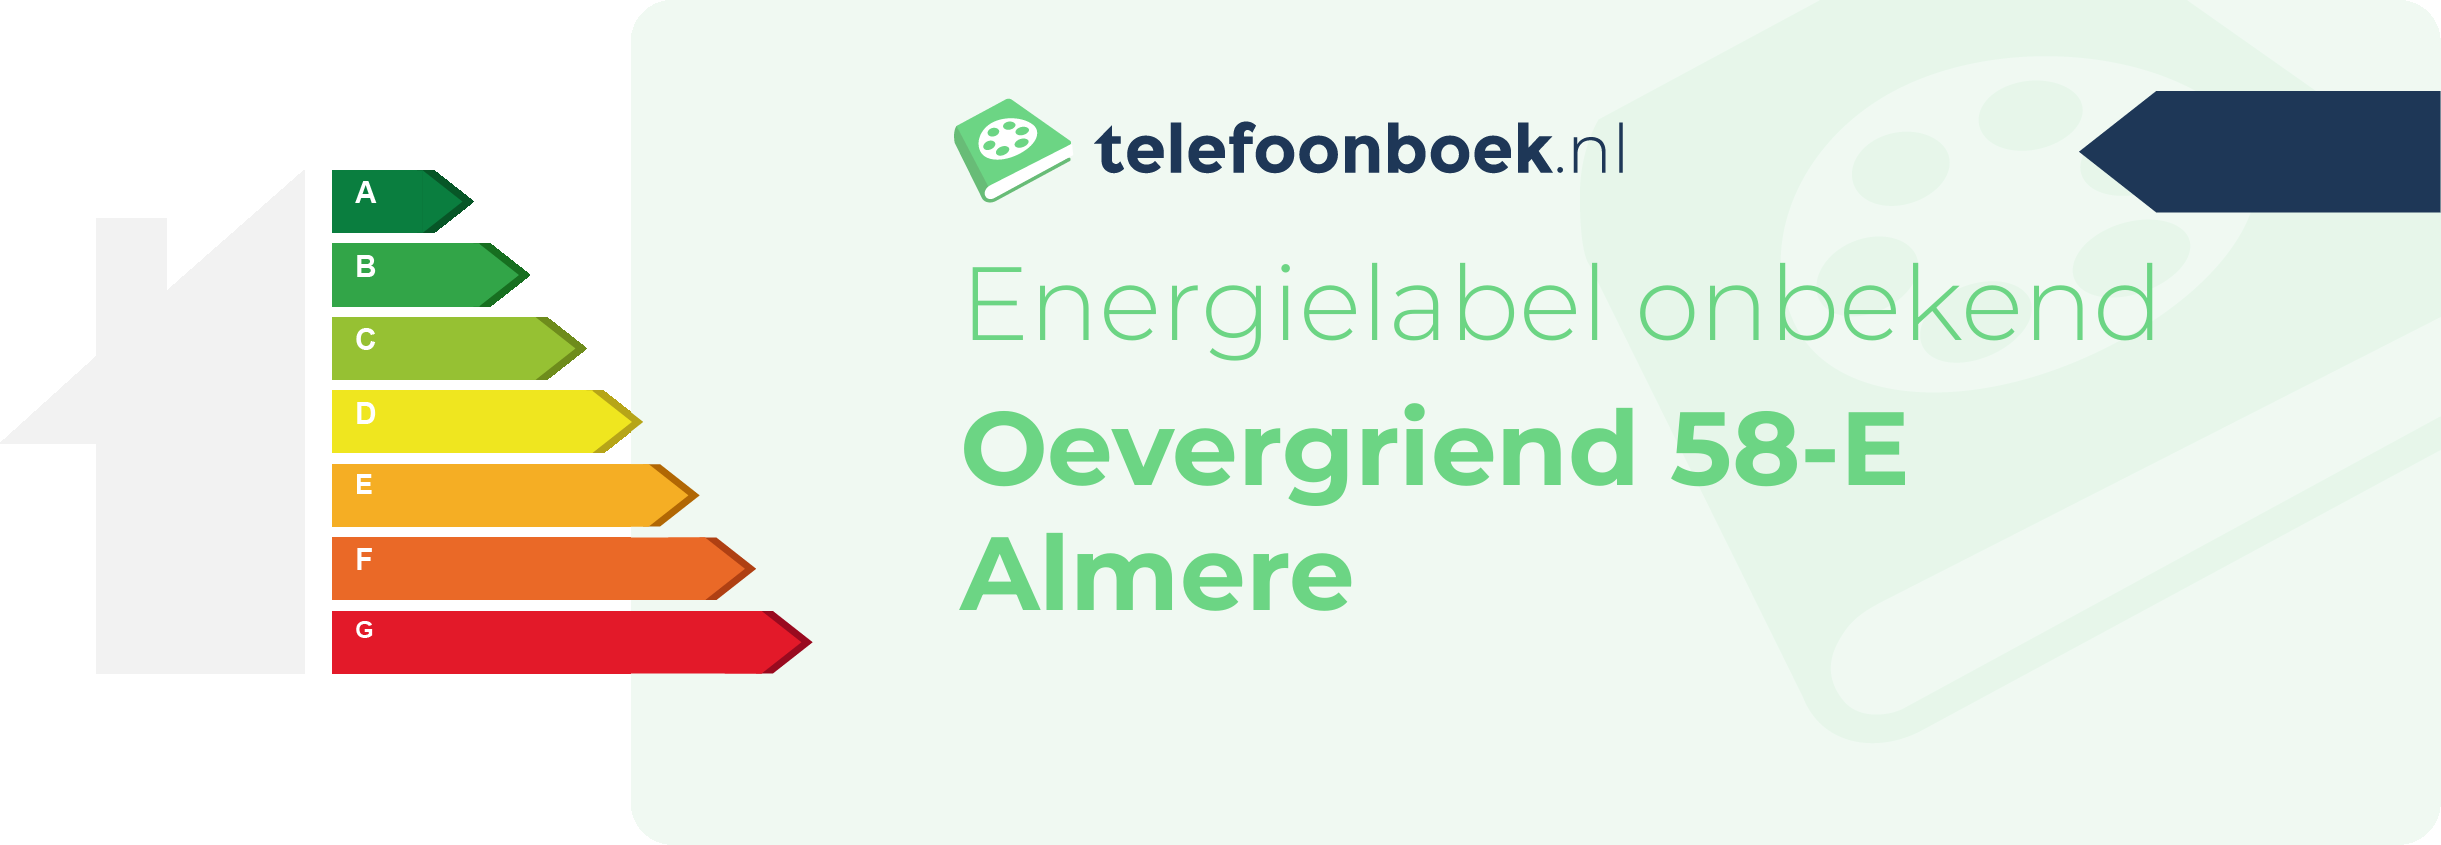 Energielabel Oevergriend 58-E Almere